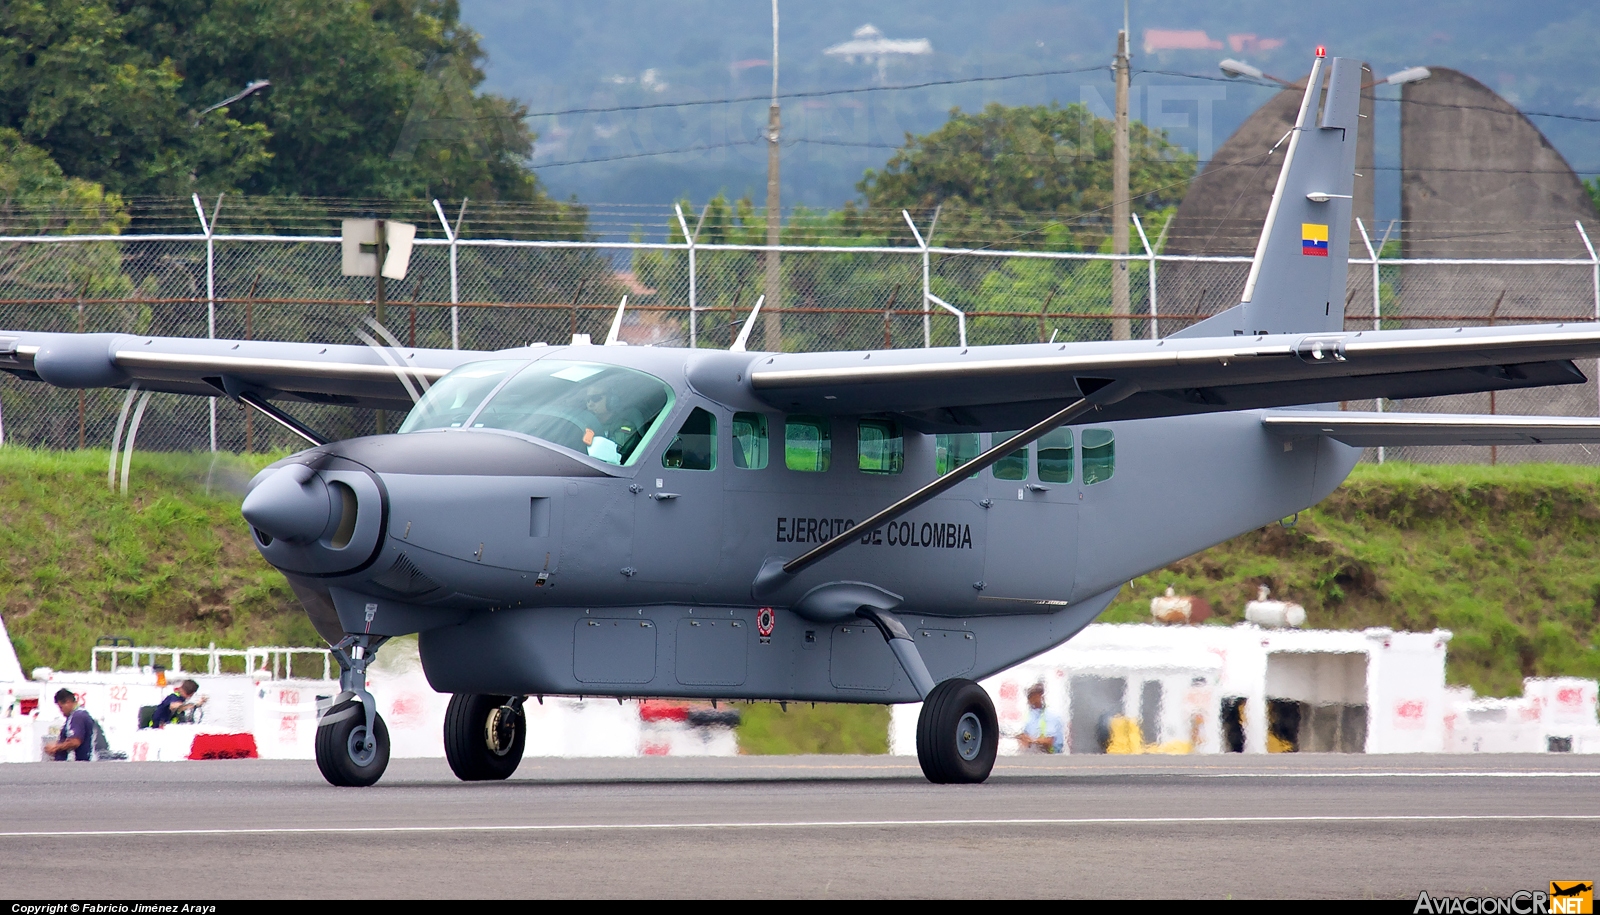 EJC-1133 - Cessna 208B Grand Caravan - Ejercito de Colombia